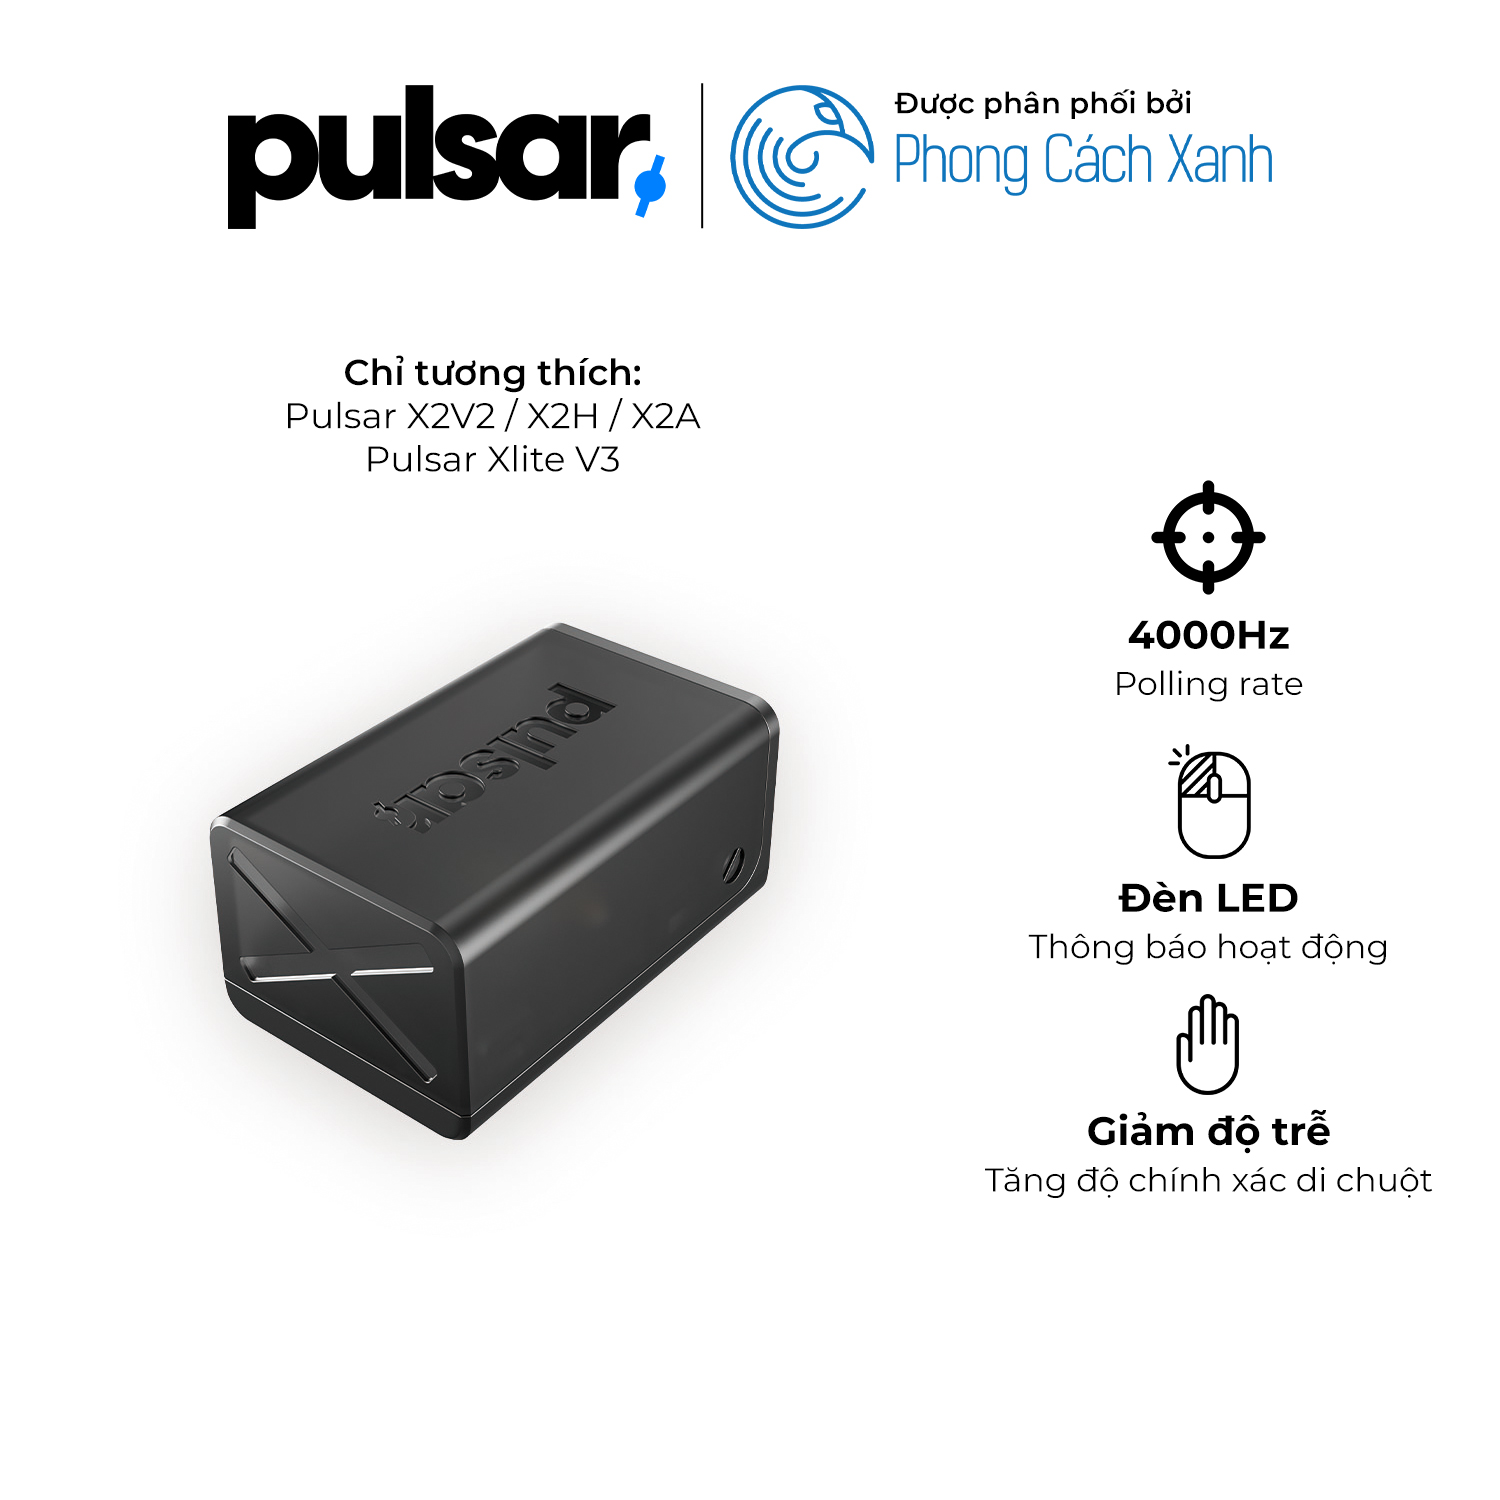 Receiver 4KHz cho chuột Pulsar 4K - Chỉ hỗ trợ dòng tương thích 4KHz - Hàng Chính Hãng